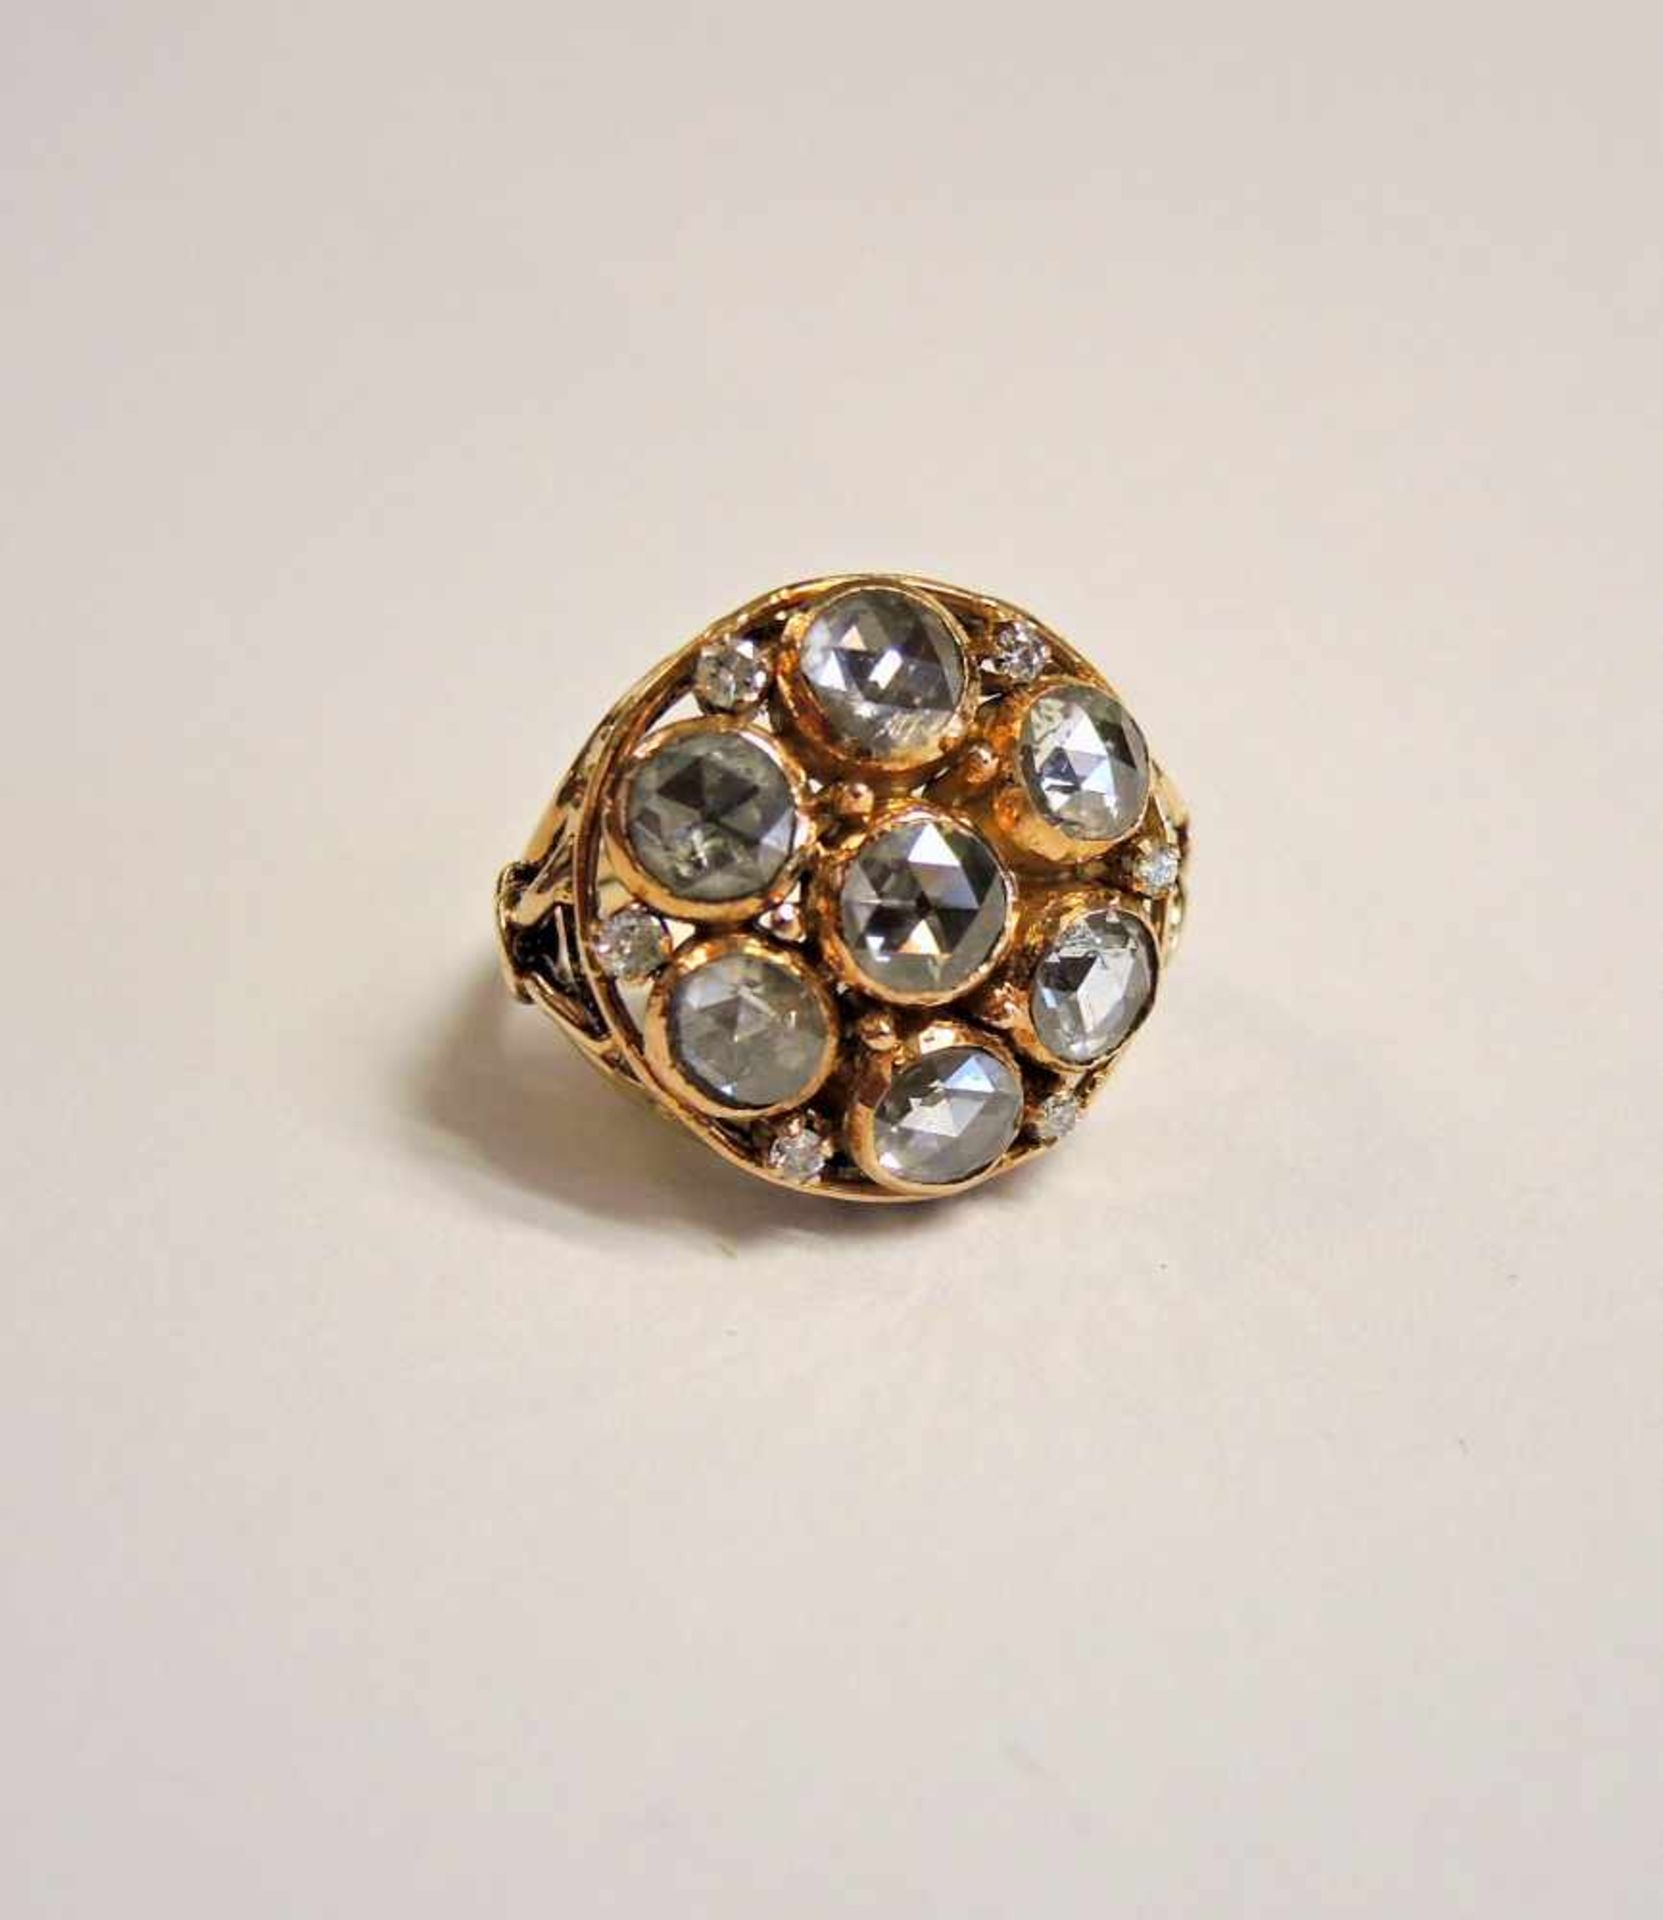 Großer Diamantrosen-Ring14 K. Gelbgold-Fassung mit Diamantrosenbesatz von ca. 4,5 ct. In guter,